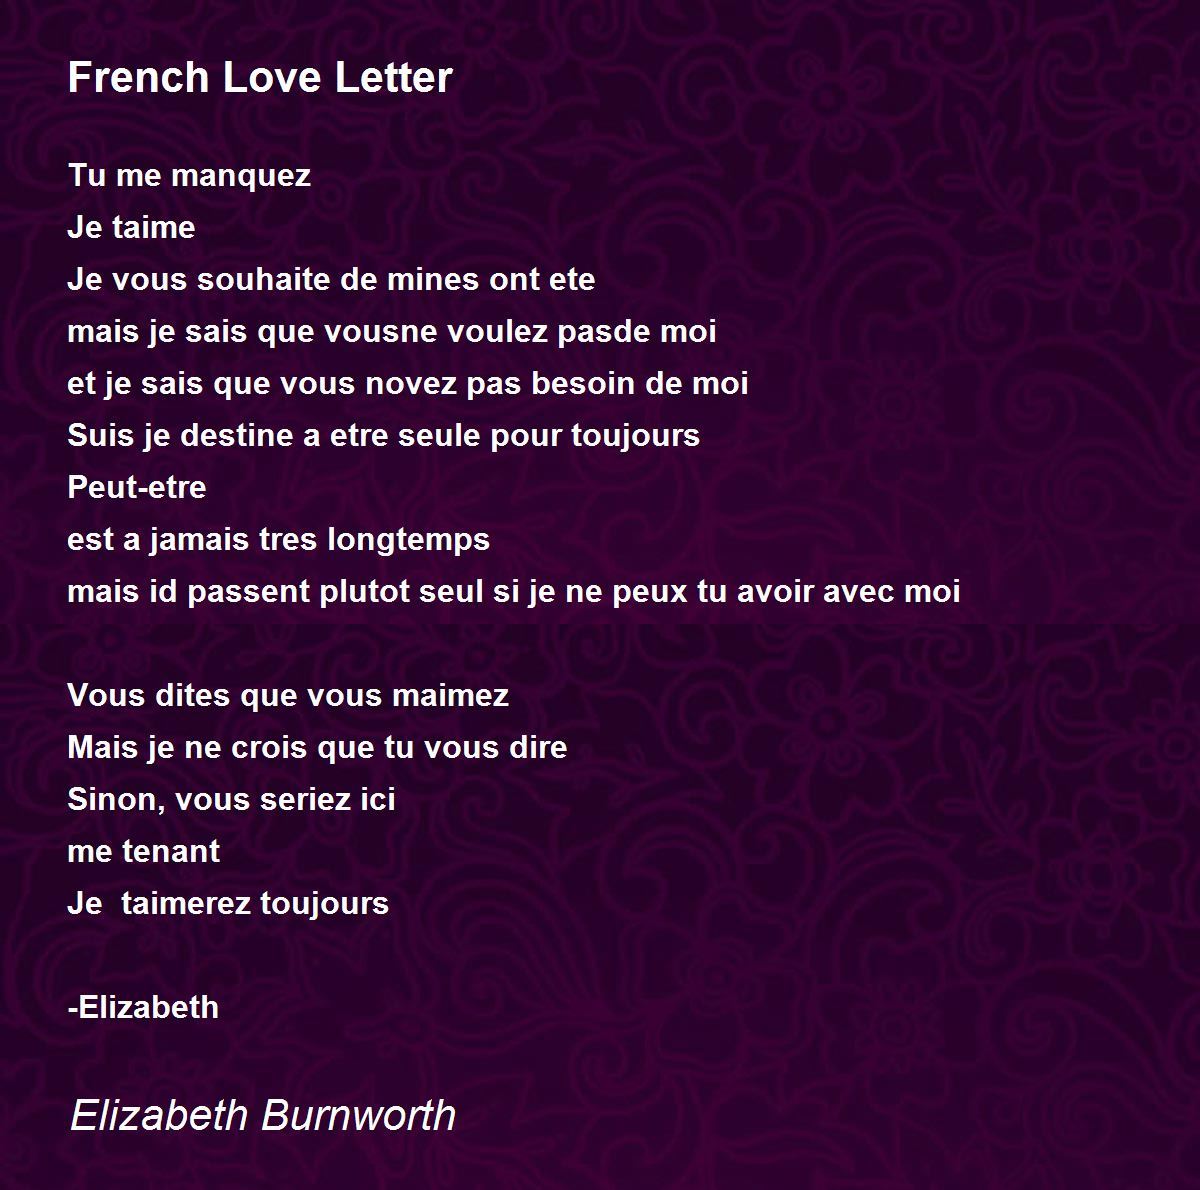 French Love Letter - French Love Letter Poem by Elizabeth Burnworth